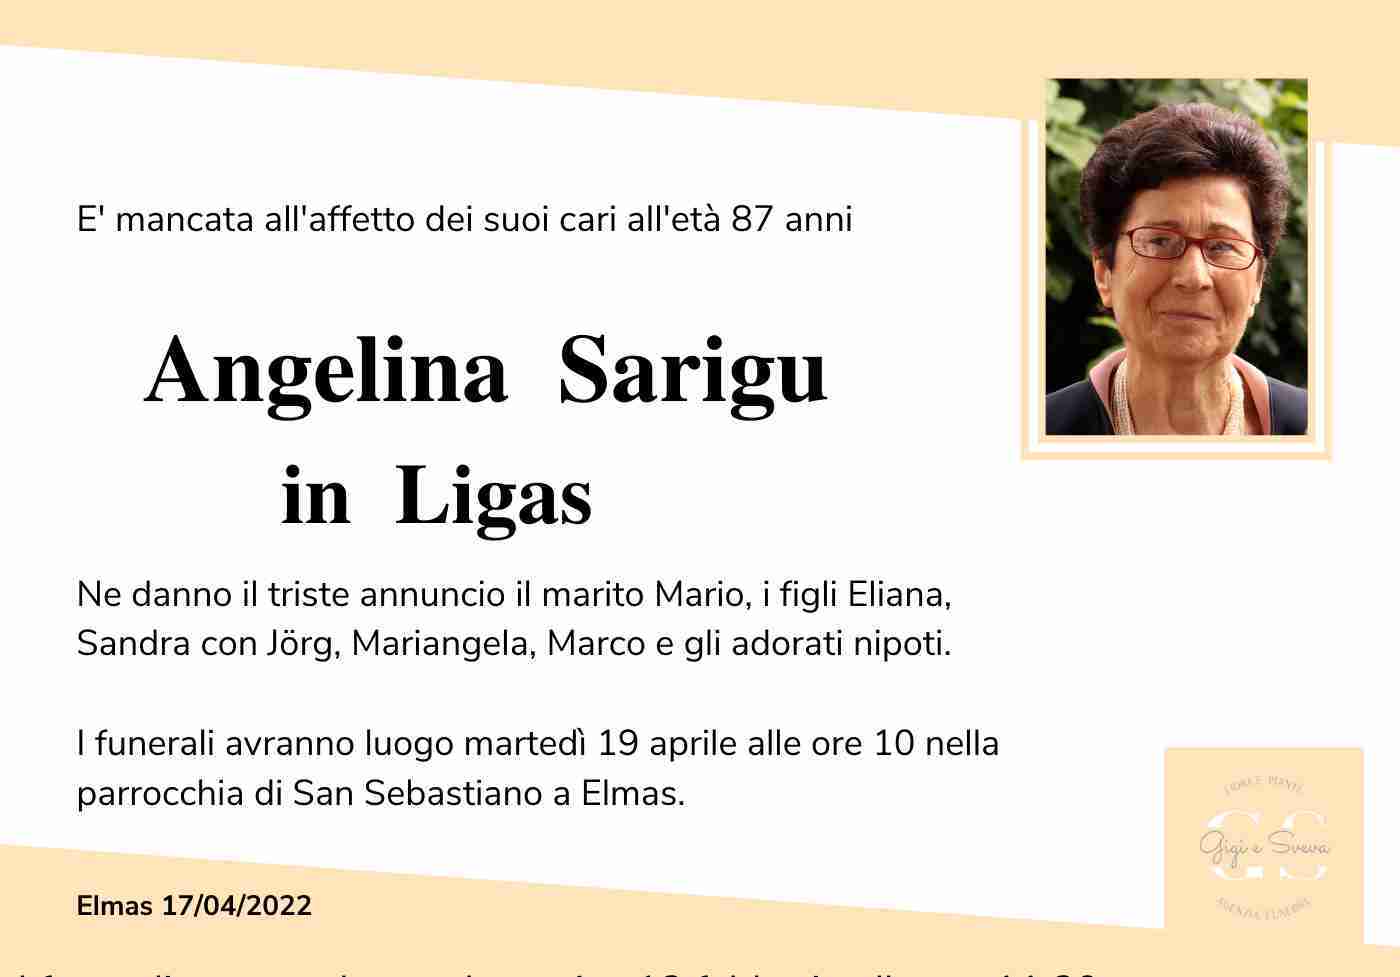 Angelina Sarigu